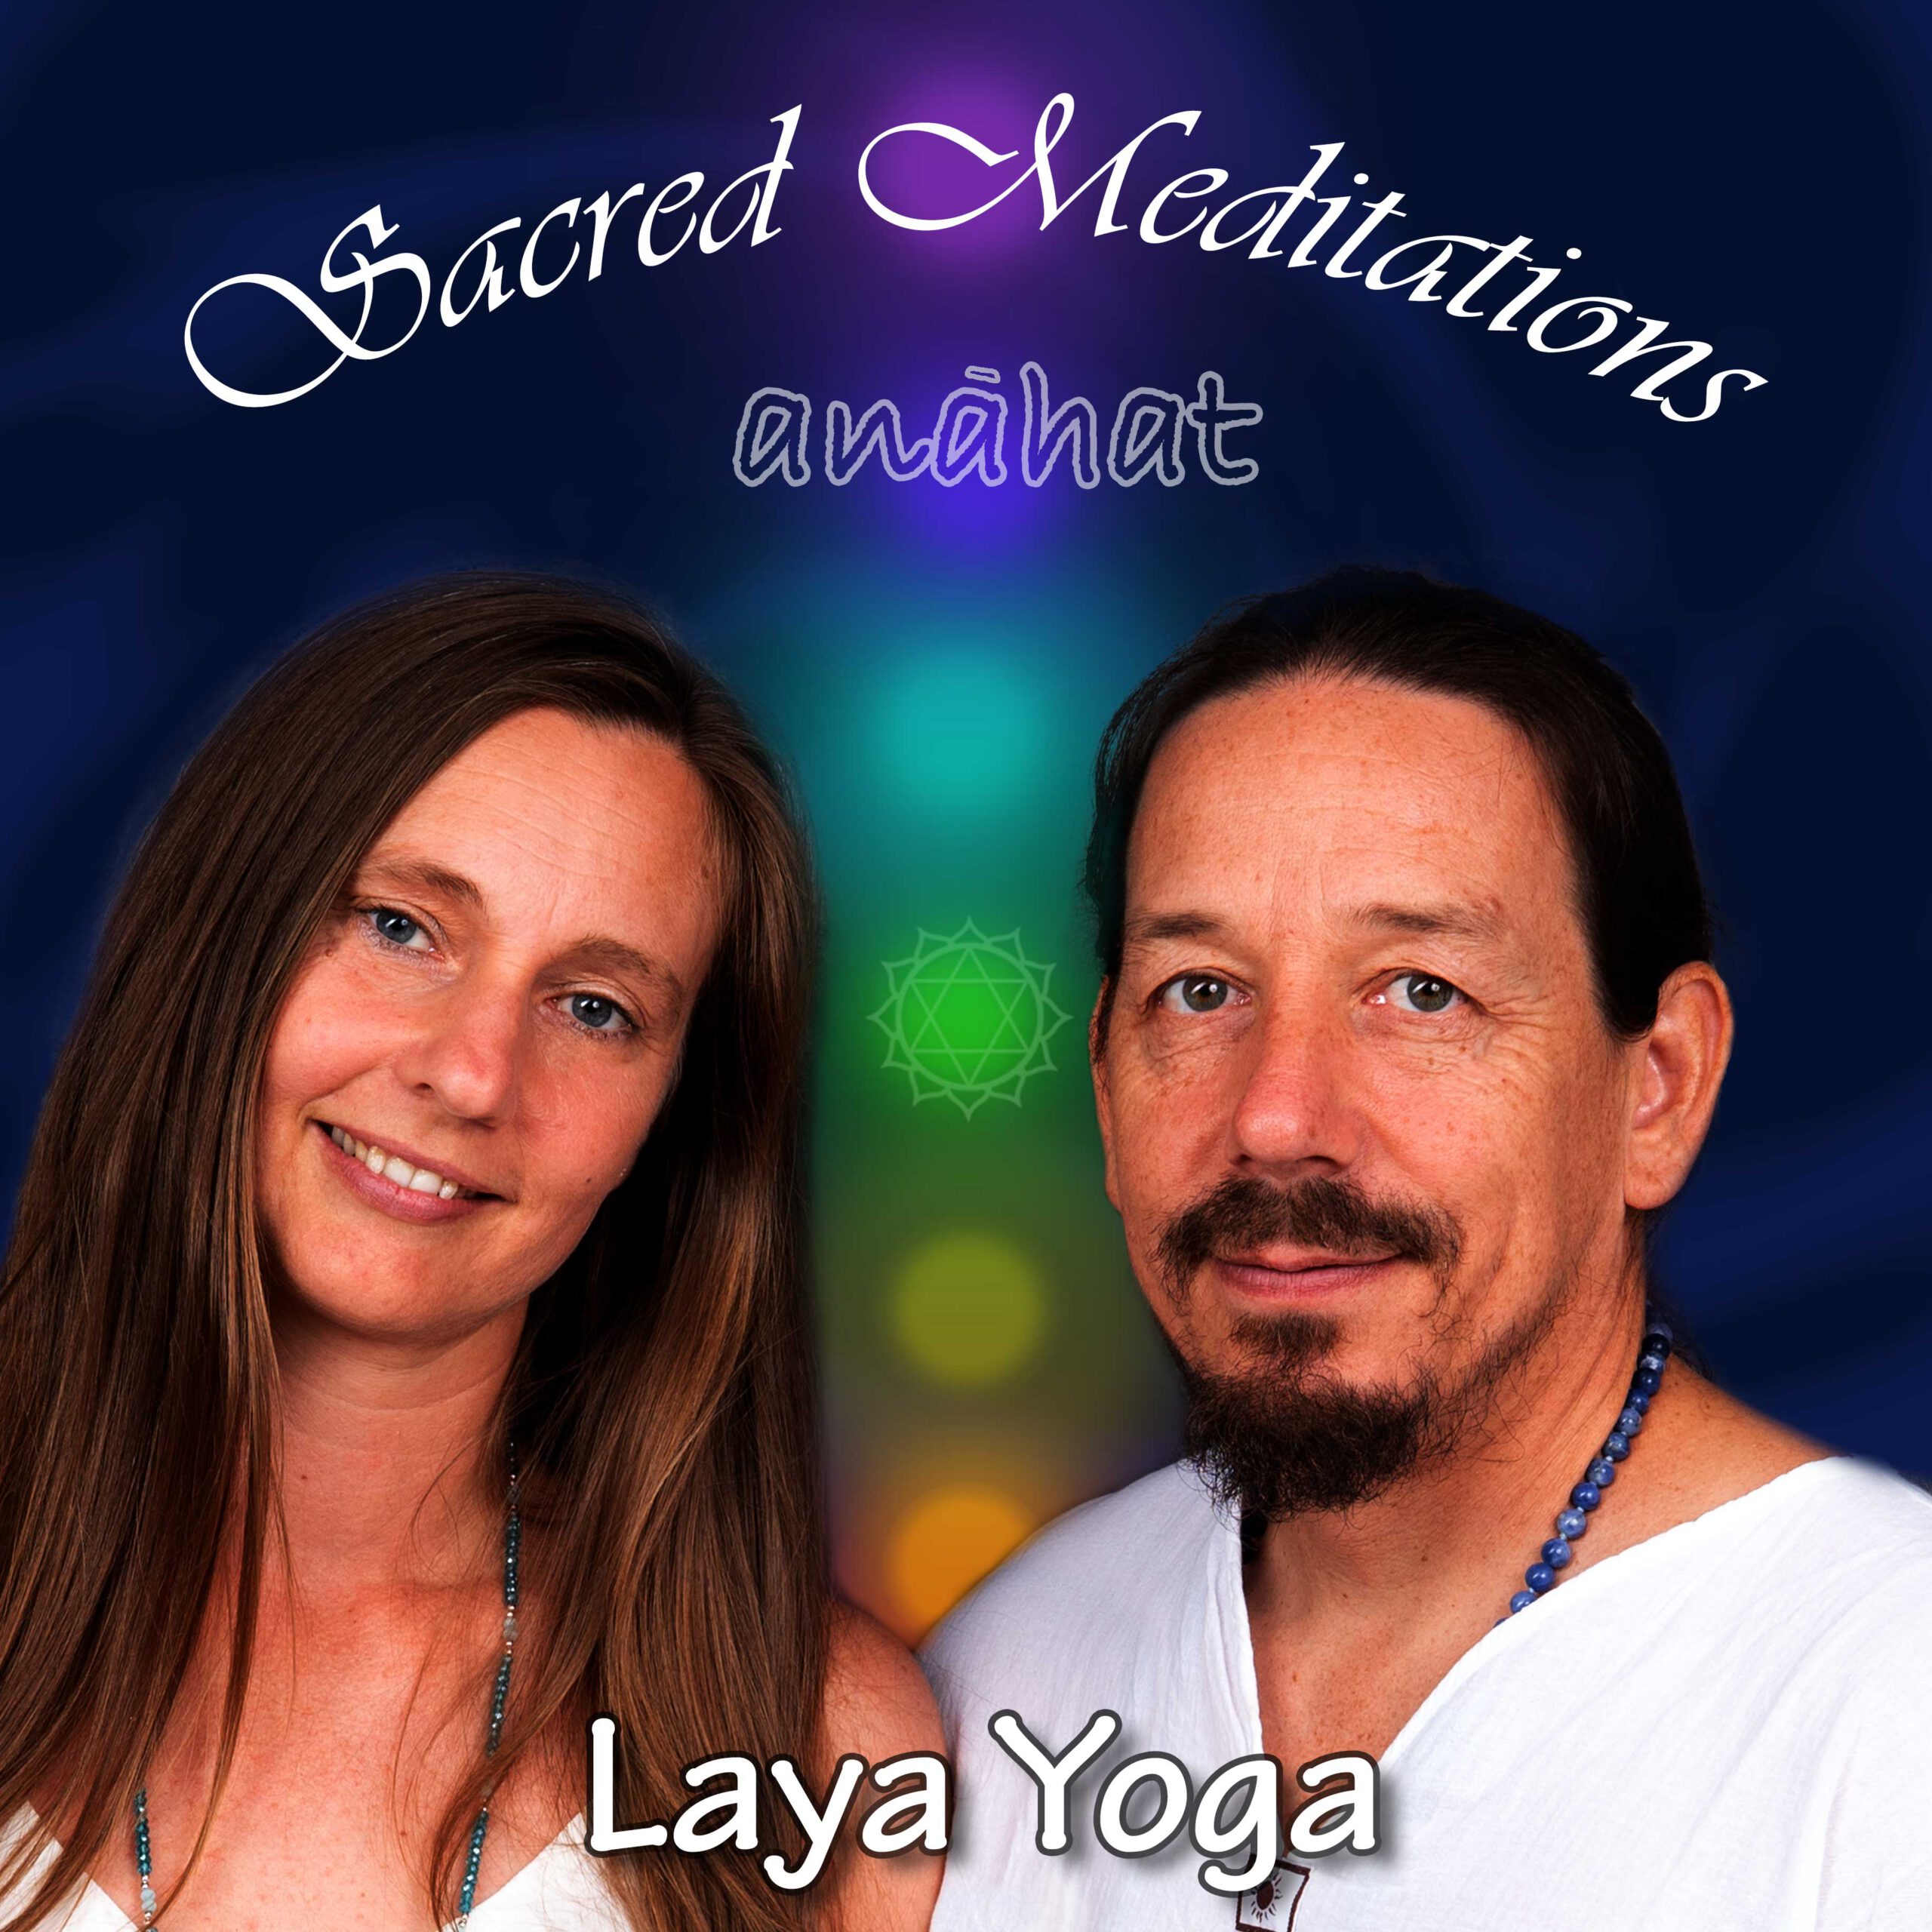 Laya Yoga Meditation anahat